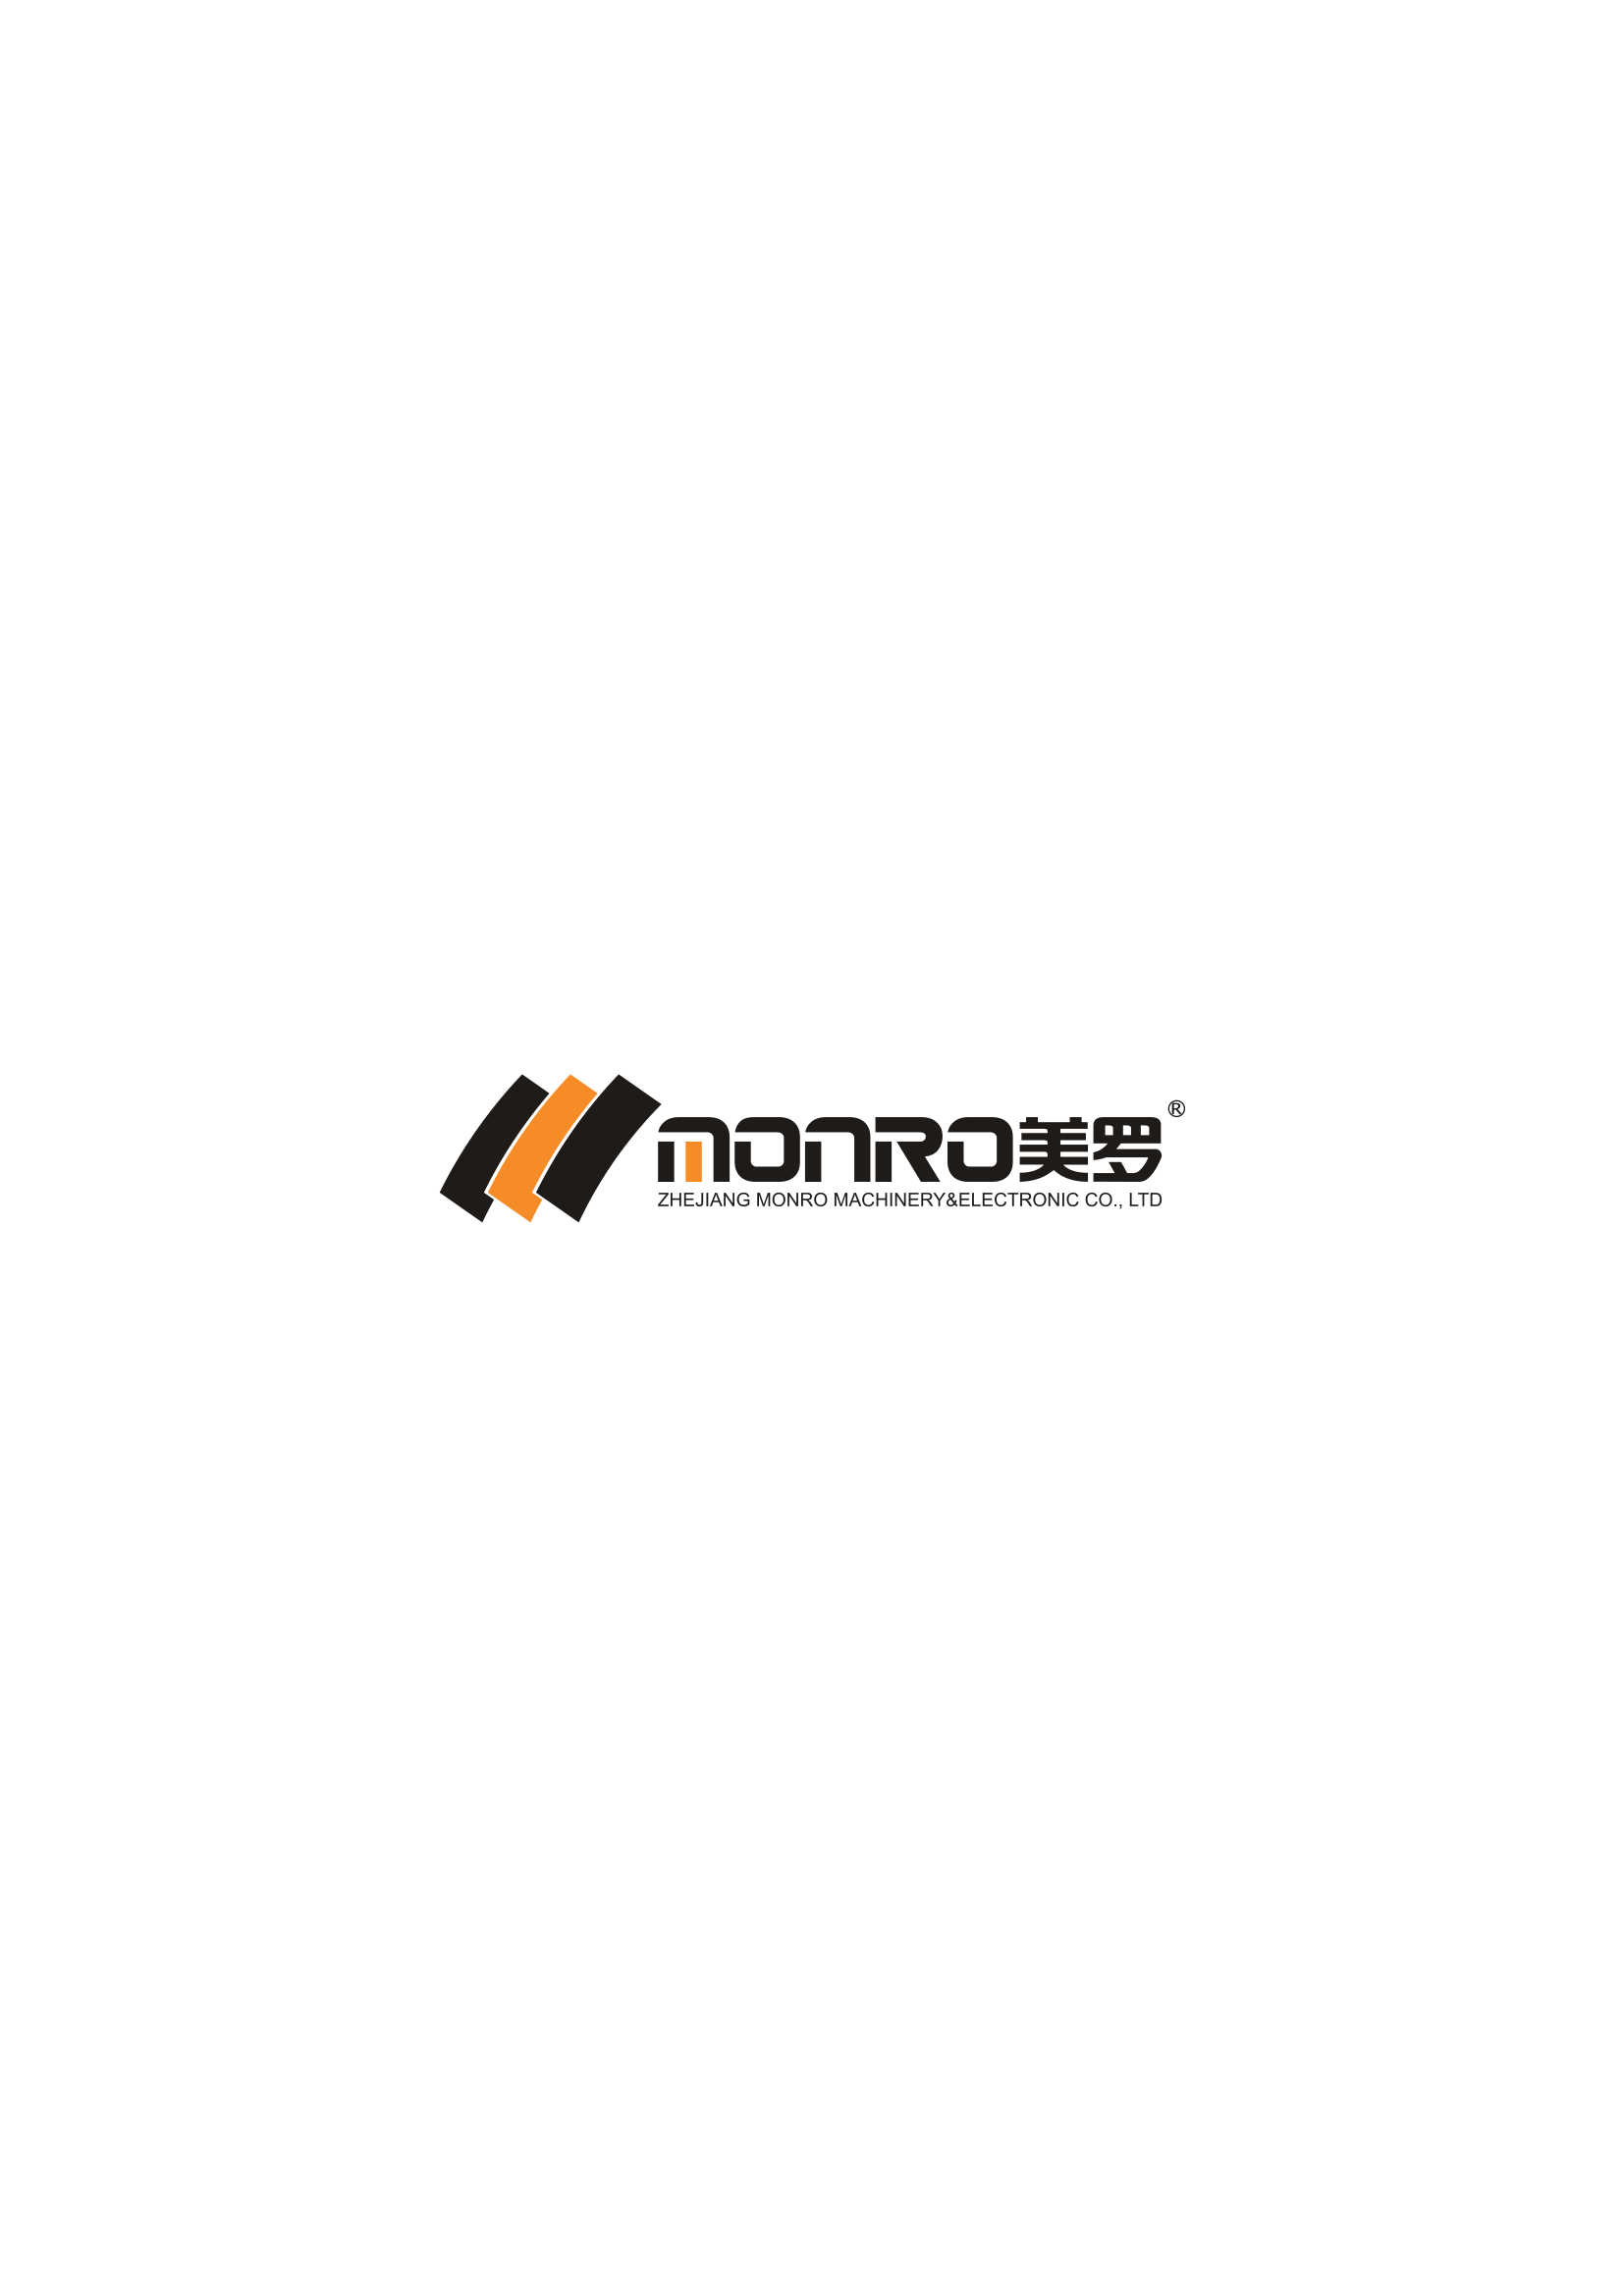 ZHEJIANG MONRO M&E CO., LTD